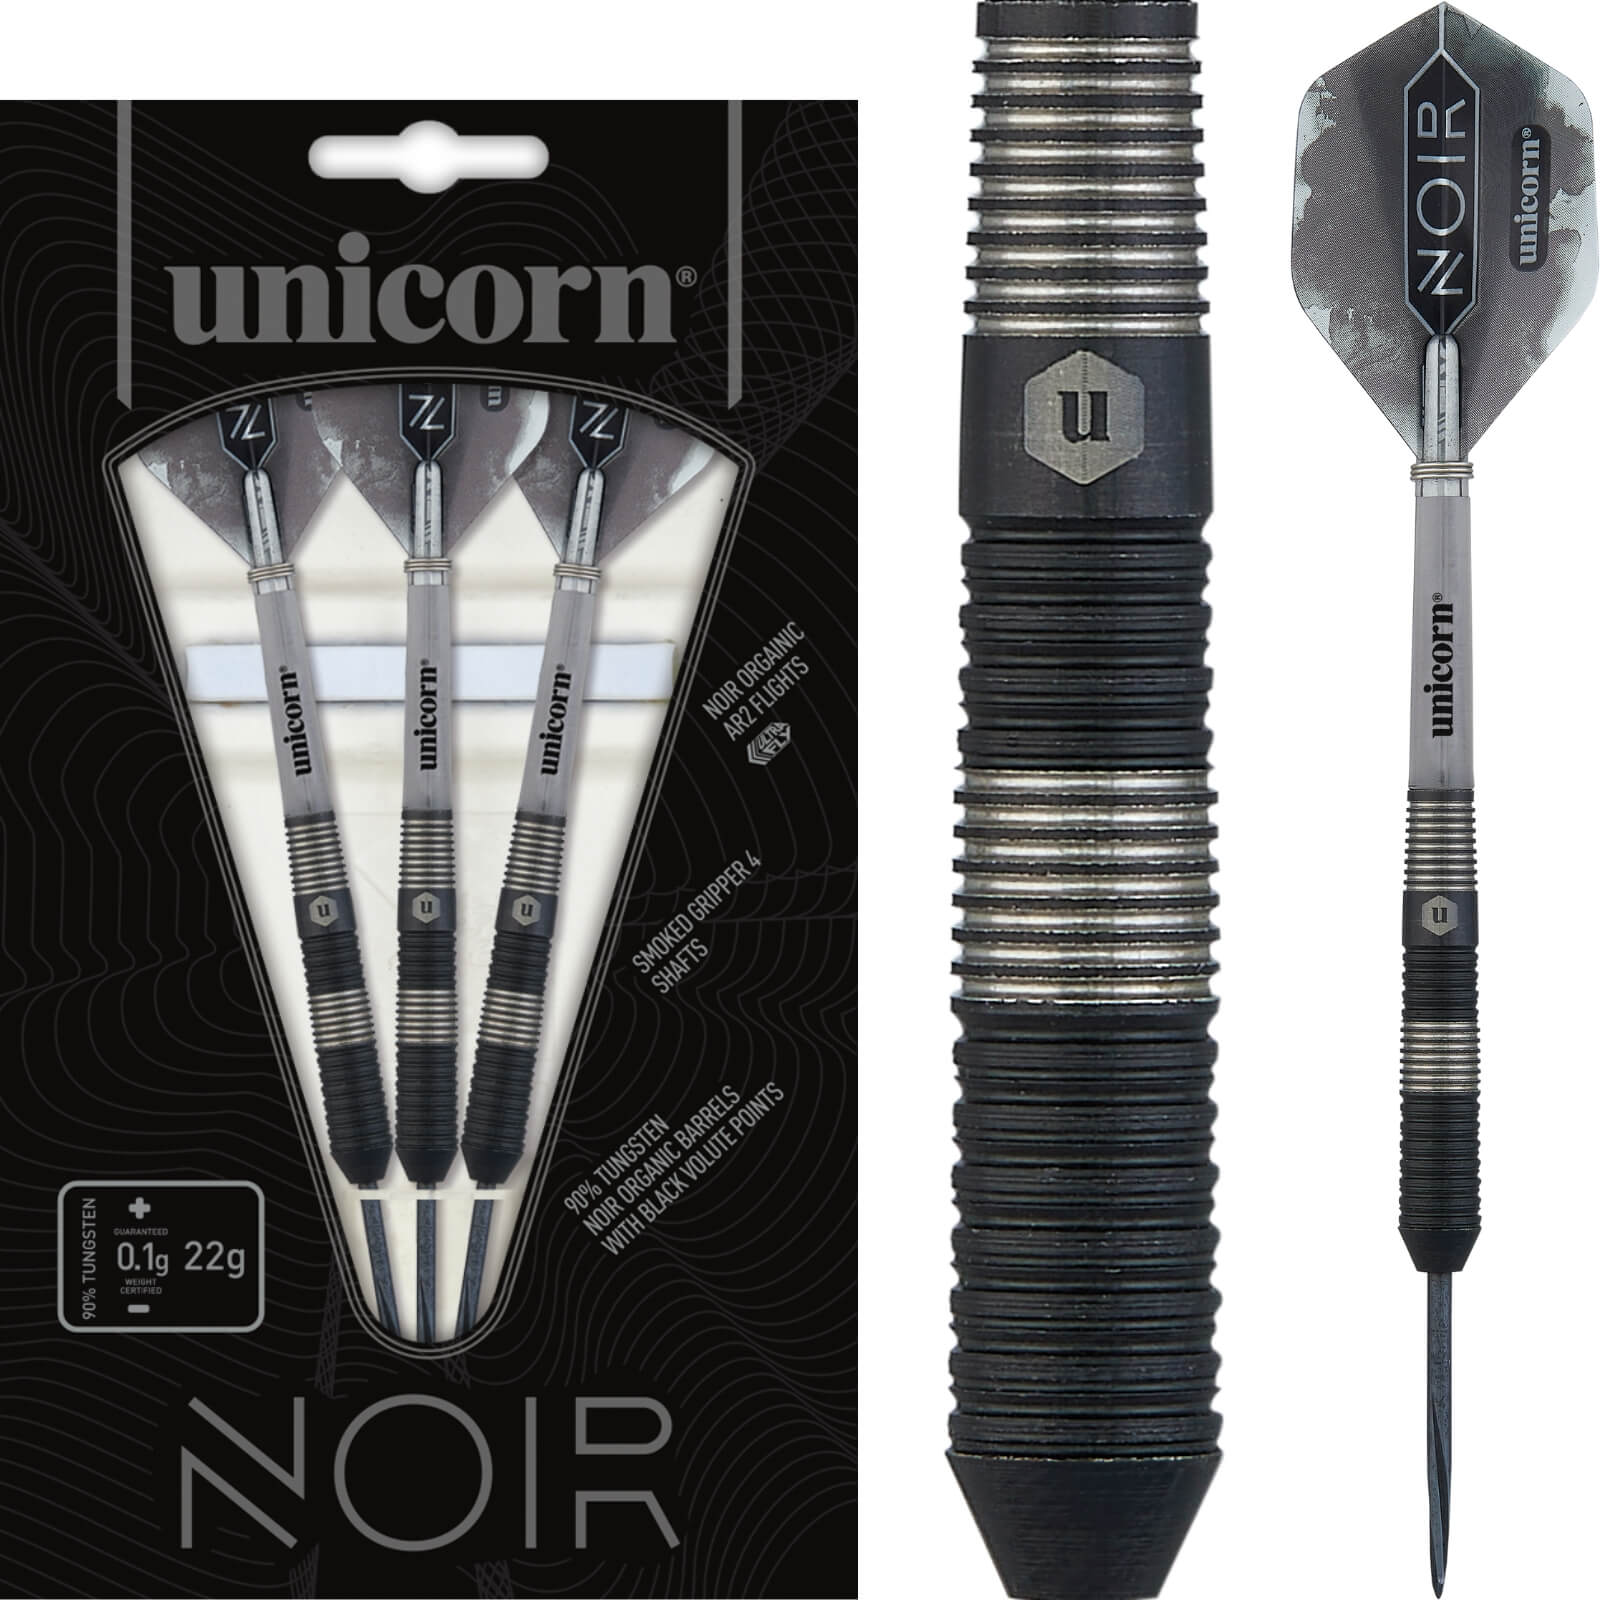 Darts - Unicorn - Noir Style 3 Darts - Steel Tip - 90% Tungsten - 22g 24g 26g 